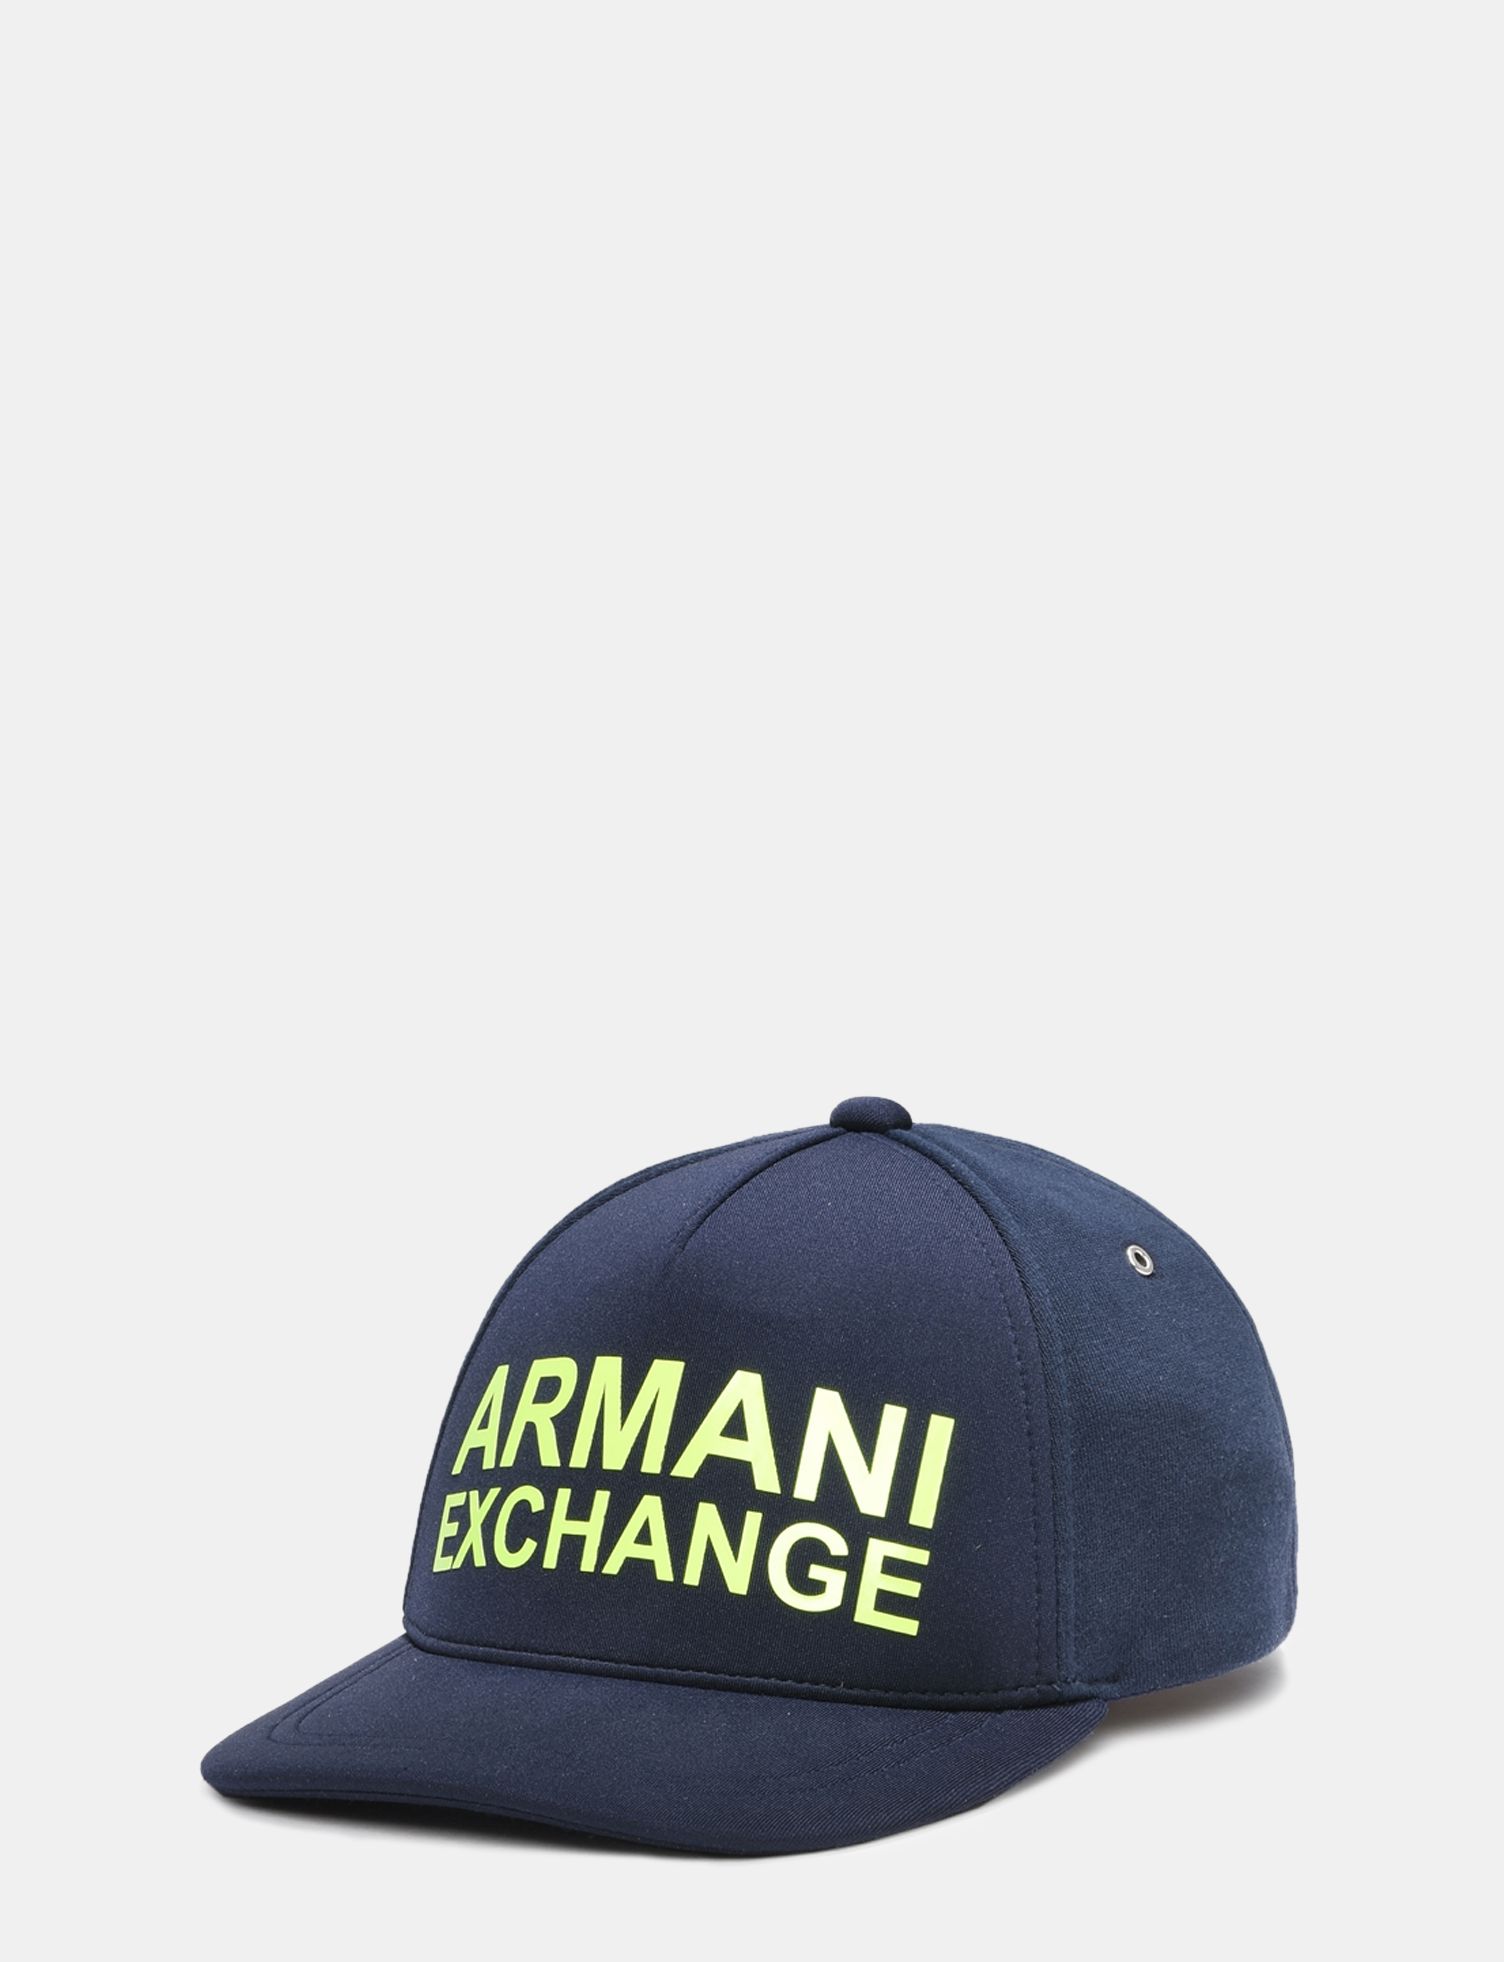 美国专柜正品代购2017新款男帽ArmaniExchange空气棉LOGO棒球帽